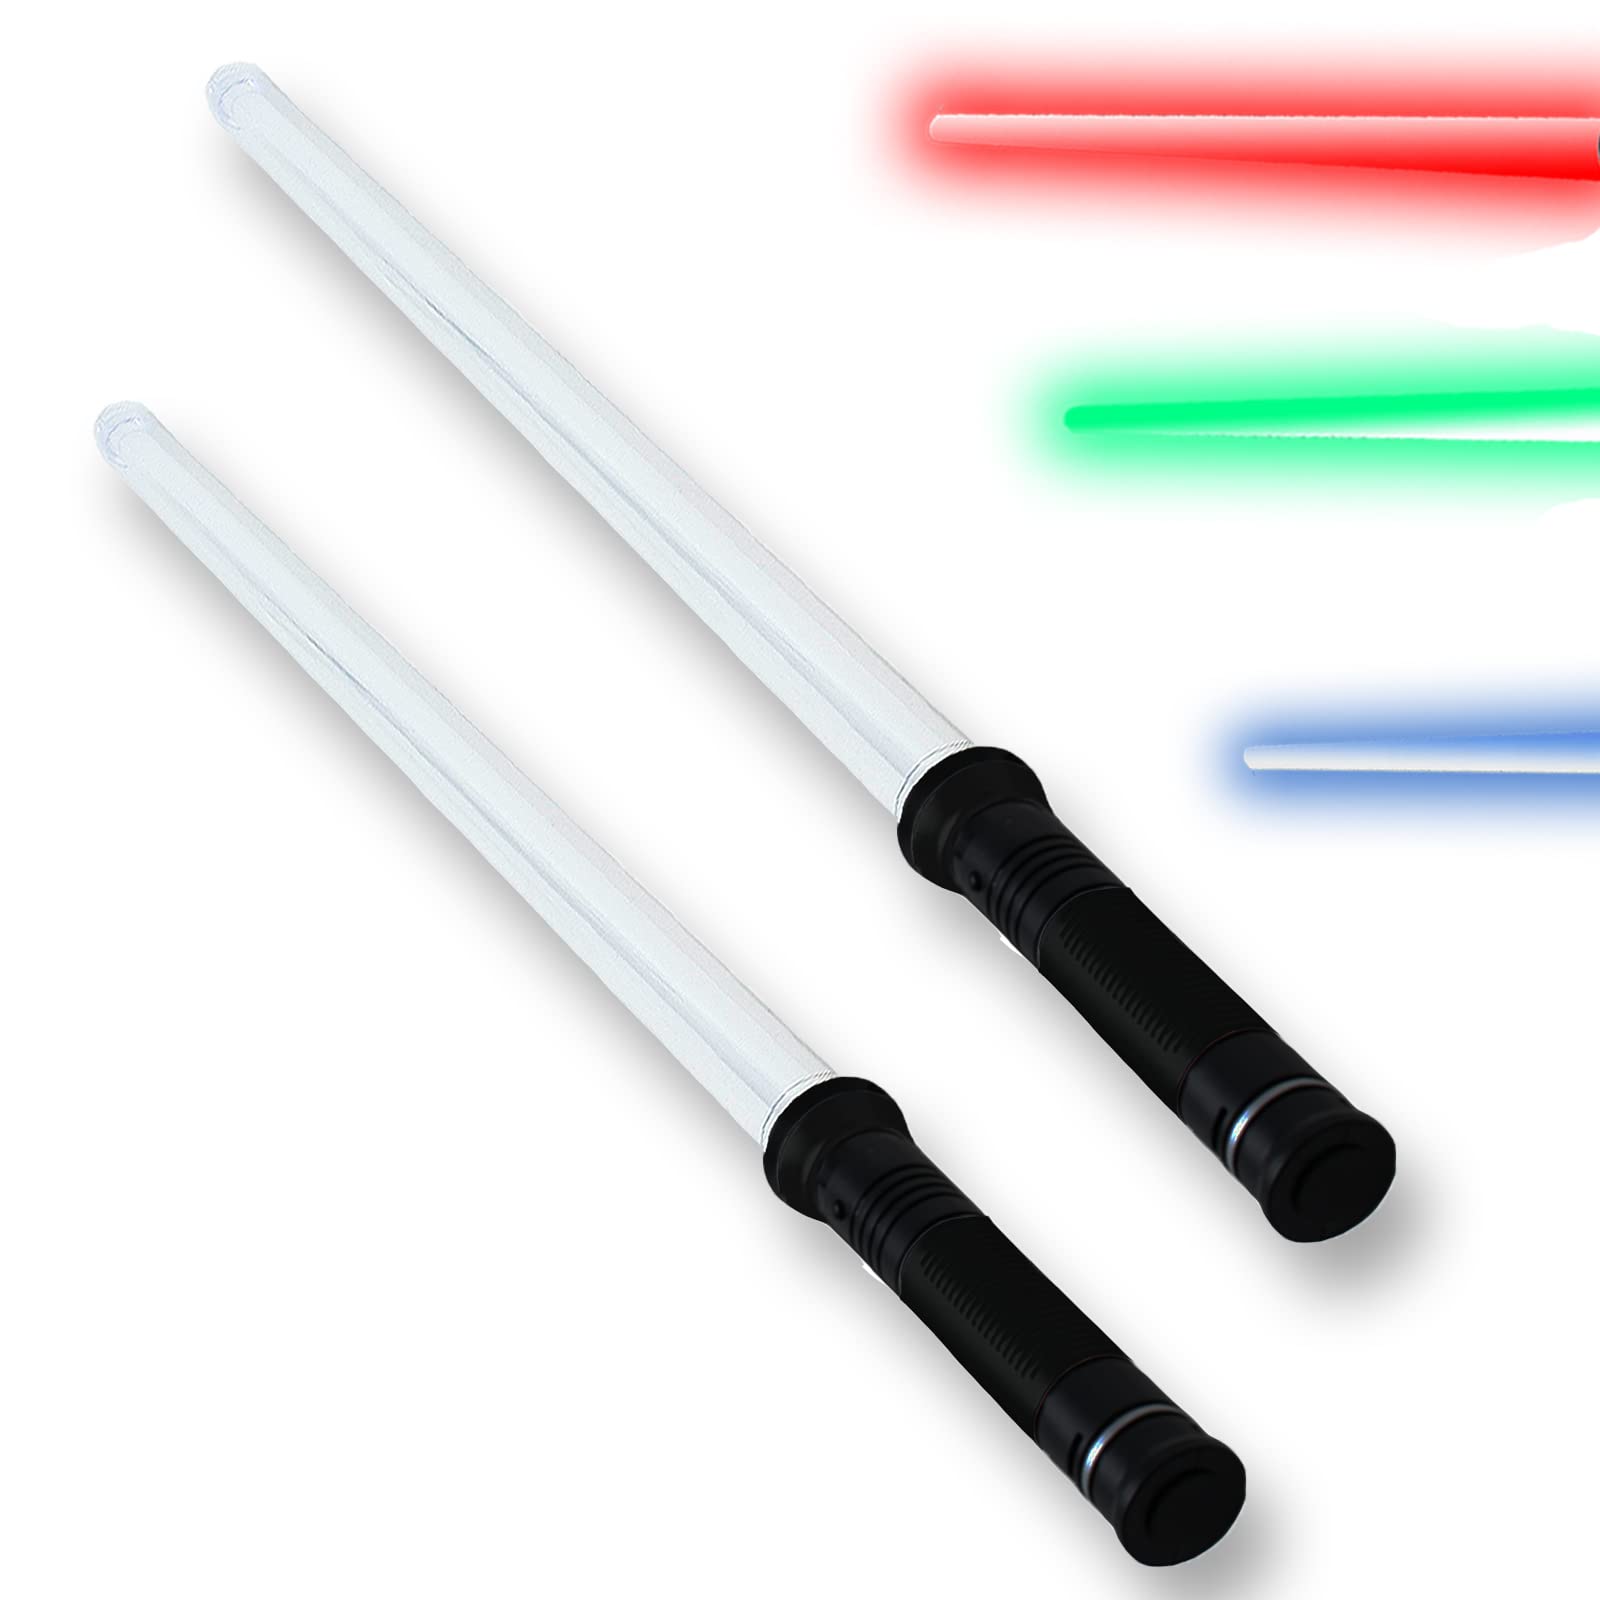 TE-Trend tevenger 2 Stück Lichtschwert Laserschwert Lightsaber mit 4-Fach wählbaren LED Lichteffekten in blau rot oder grün und Sound, 67cm starre Klinge Griff schwarz